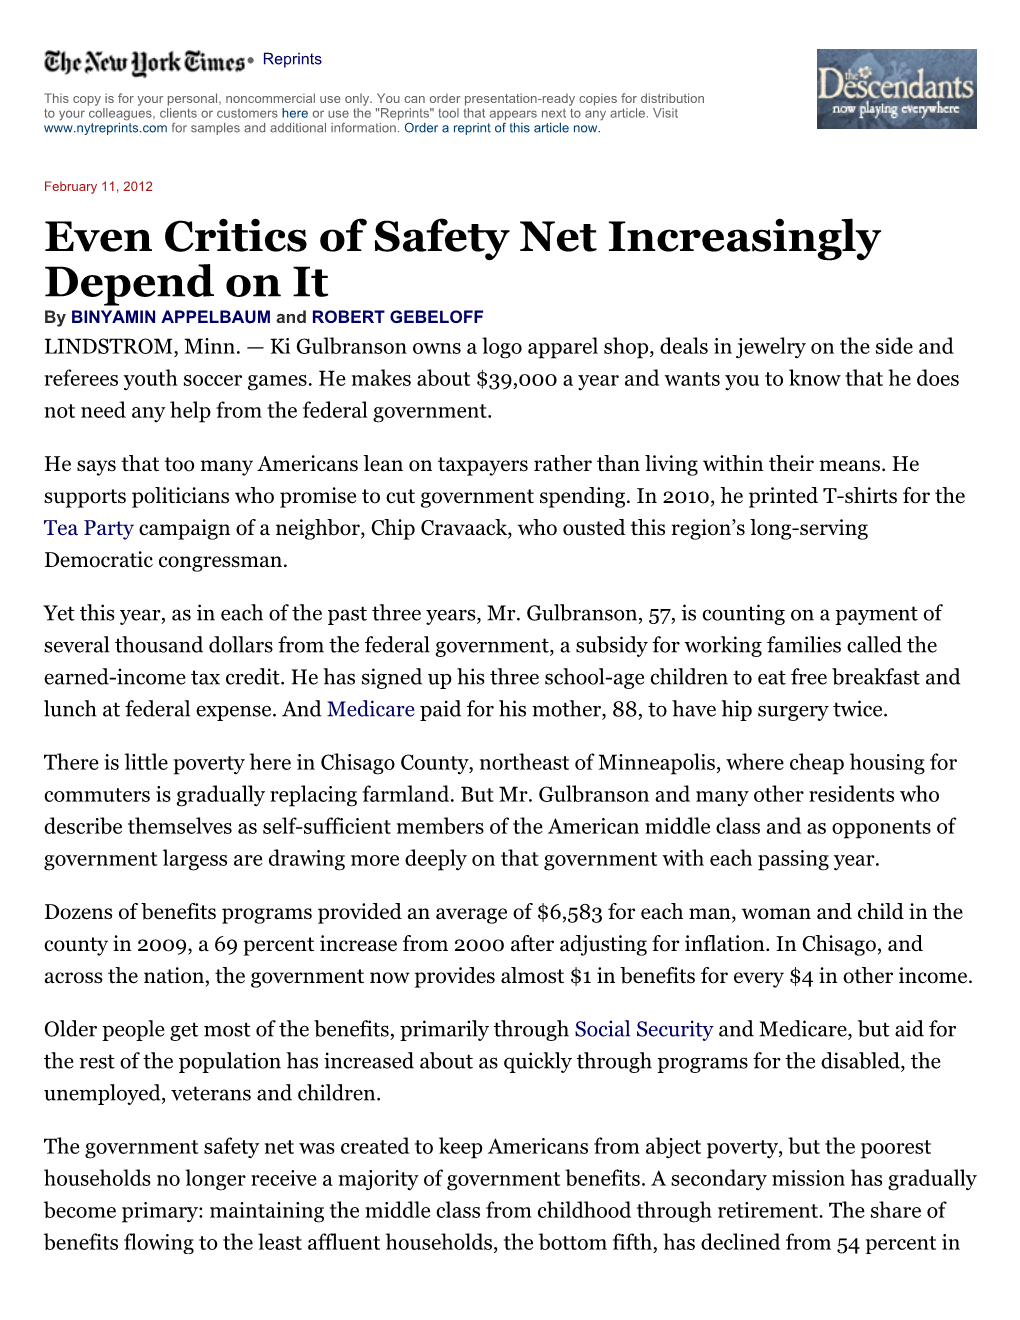 Even Critics of Safety Net Increasingly Depend on It by BINYAMIN APPELBAUM and ROBERT GEBELOFF LINDSTROM, Minn